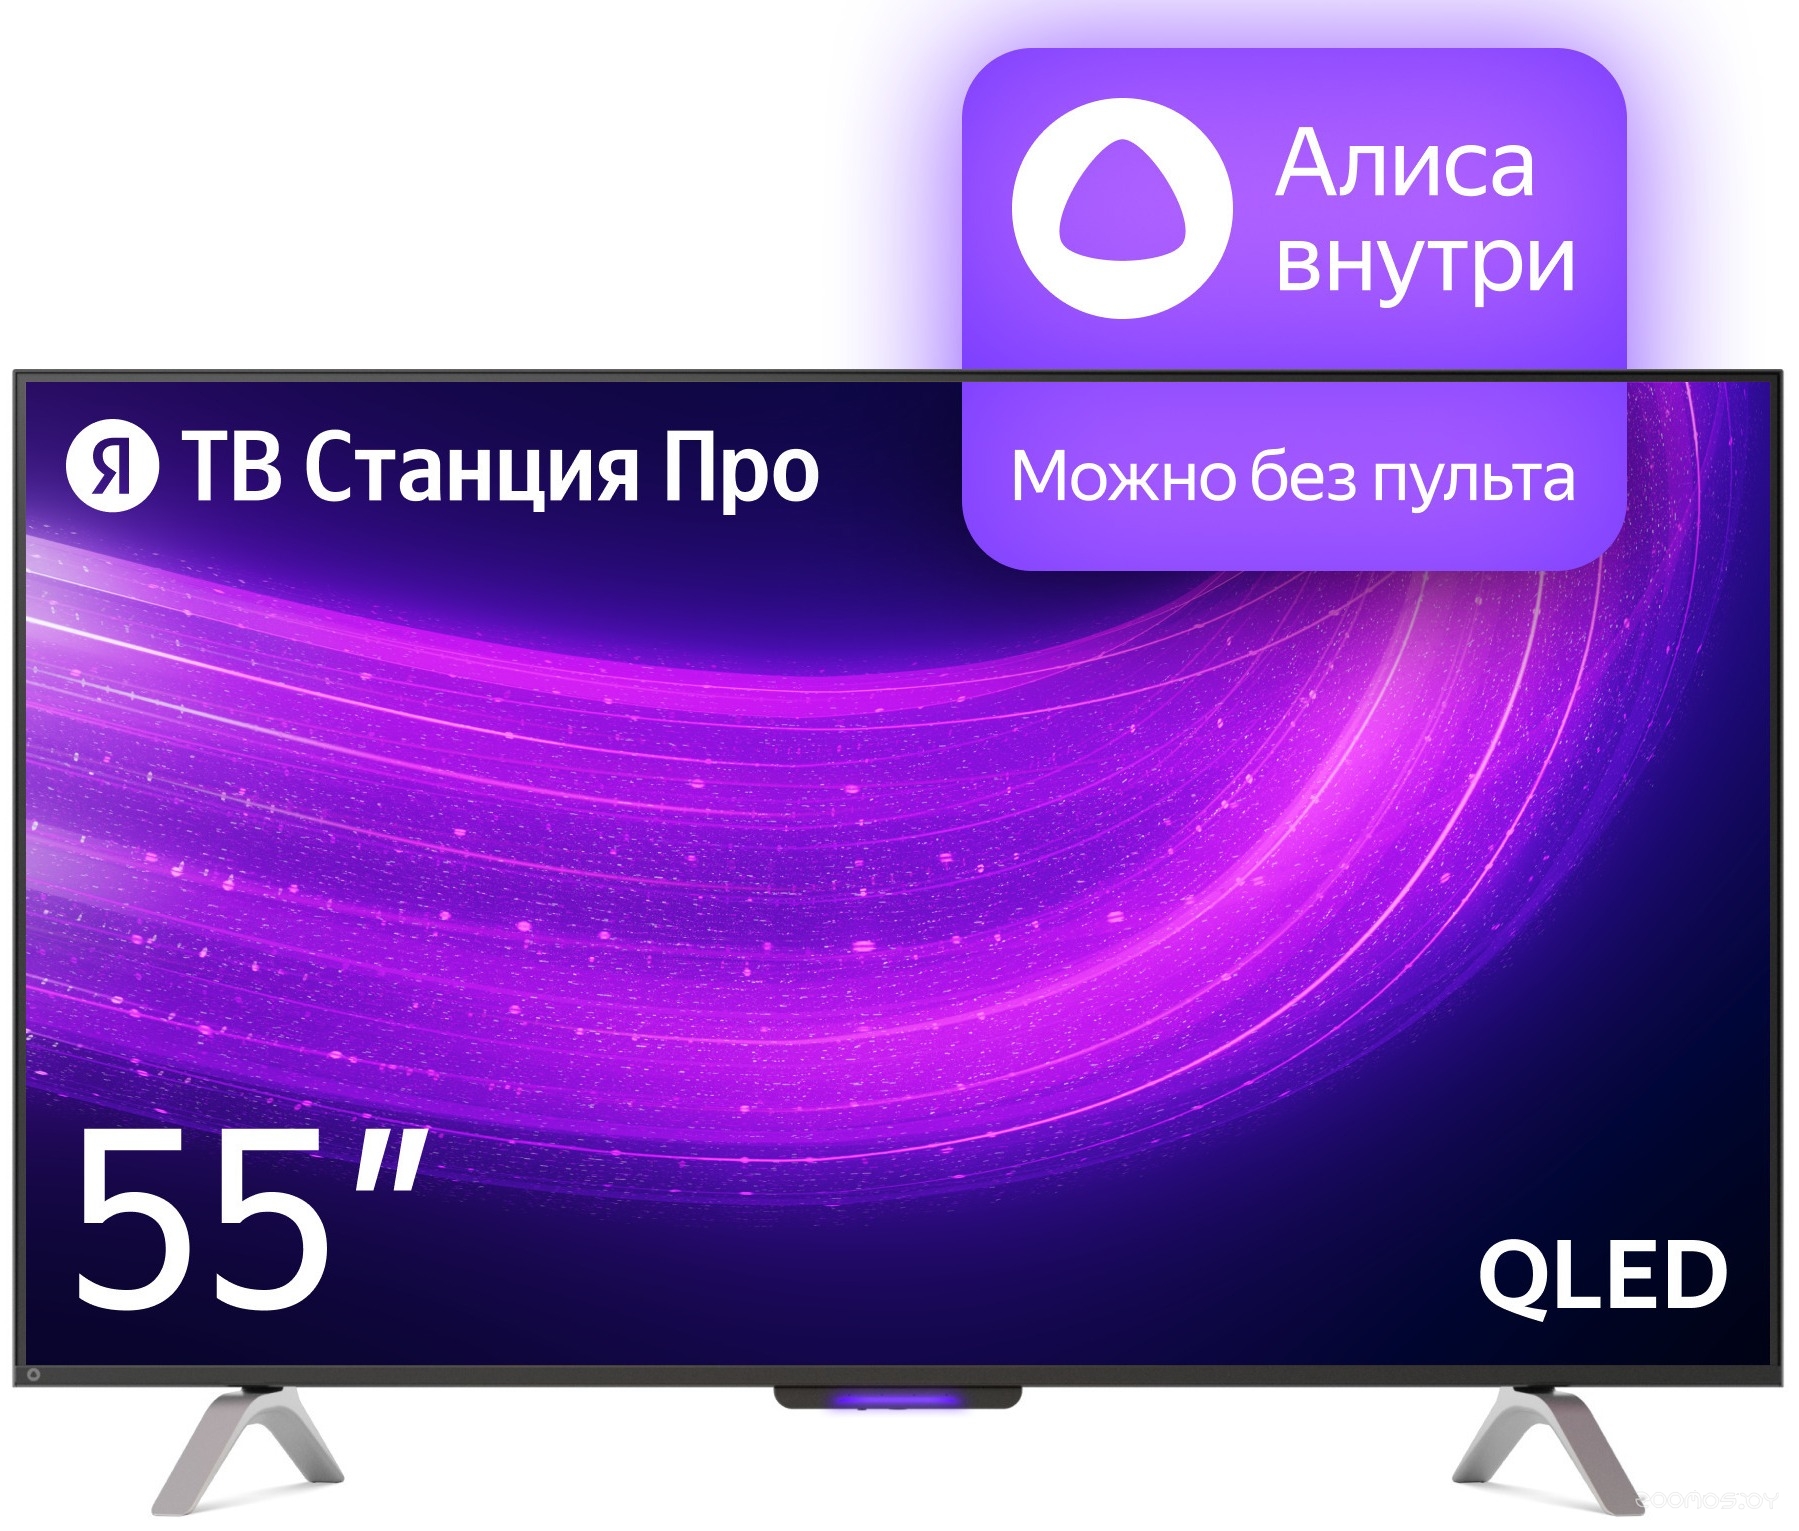 Телевизор Яндекс Станция Про с Алисой 55 в  магазине Терабит Могилев